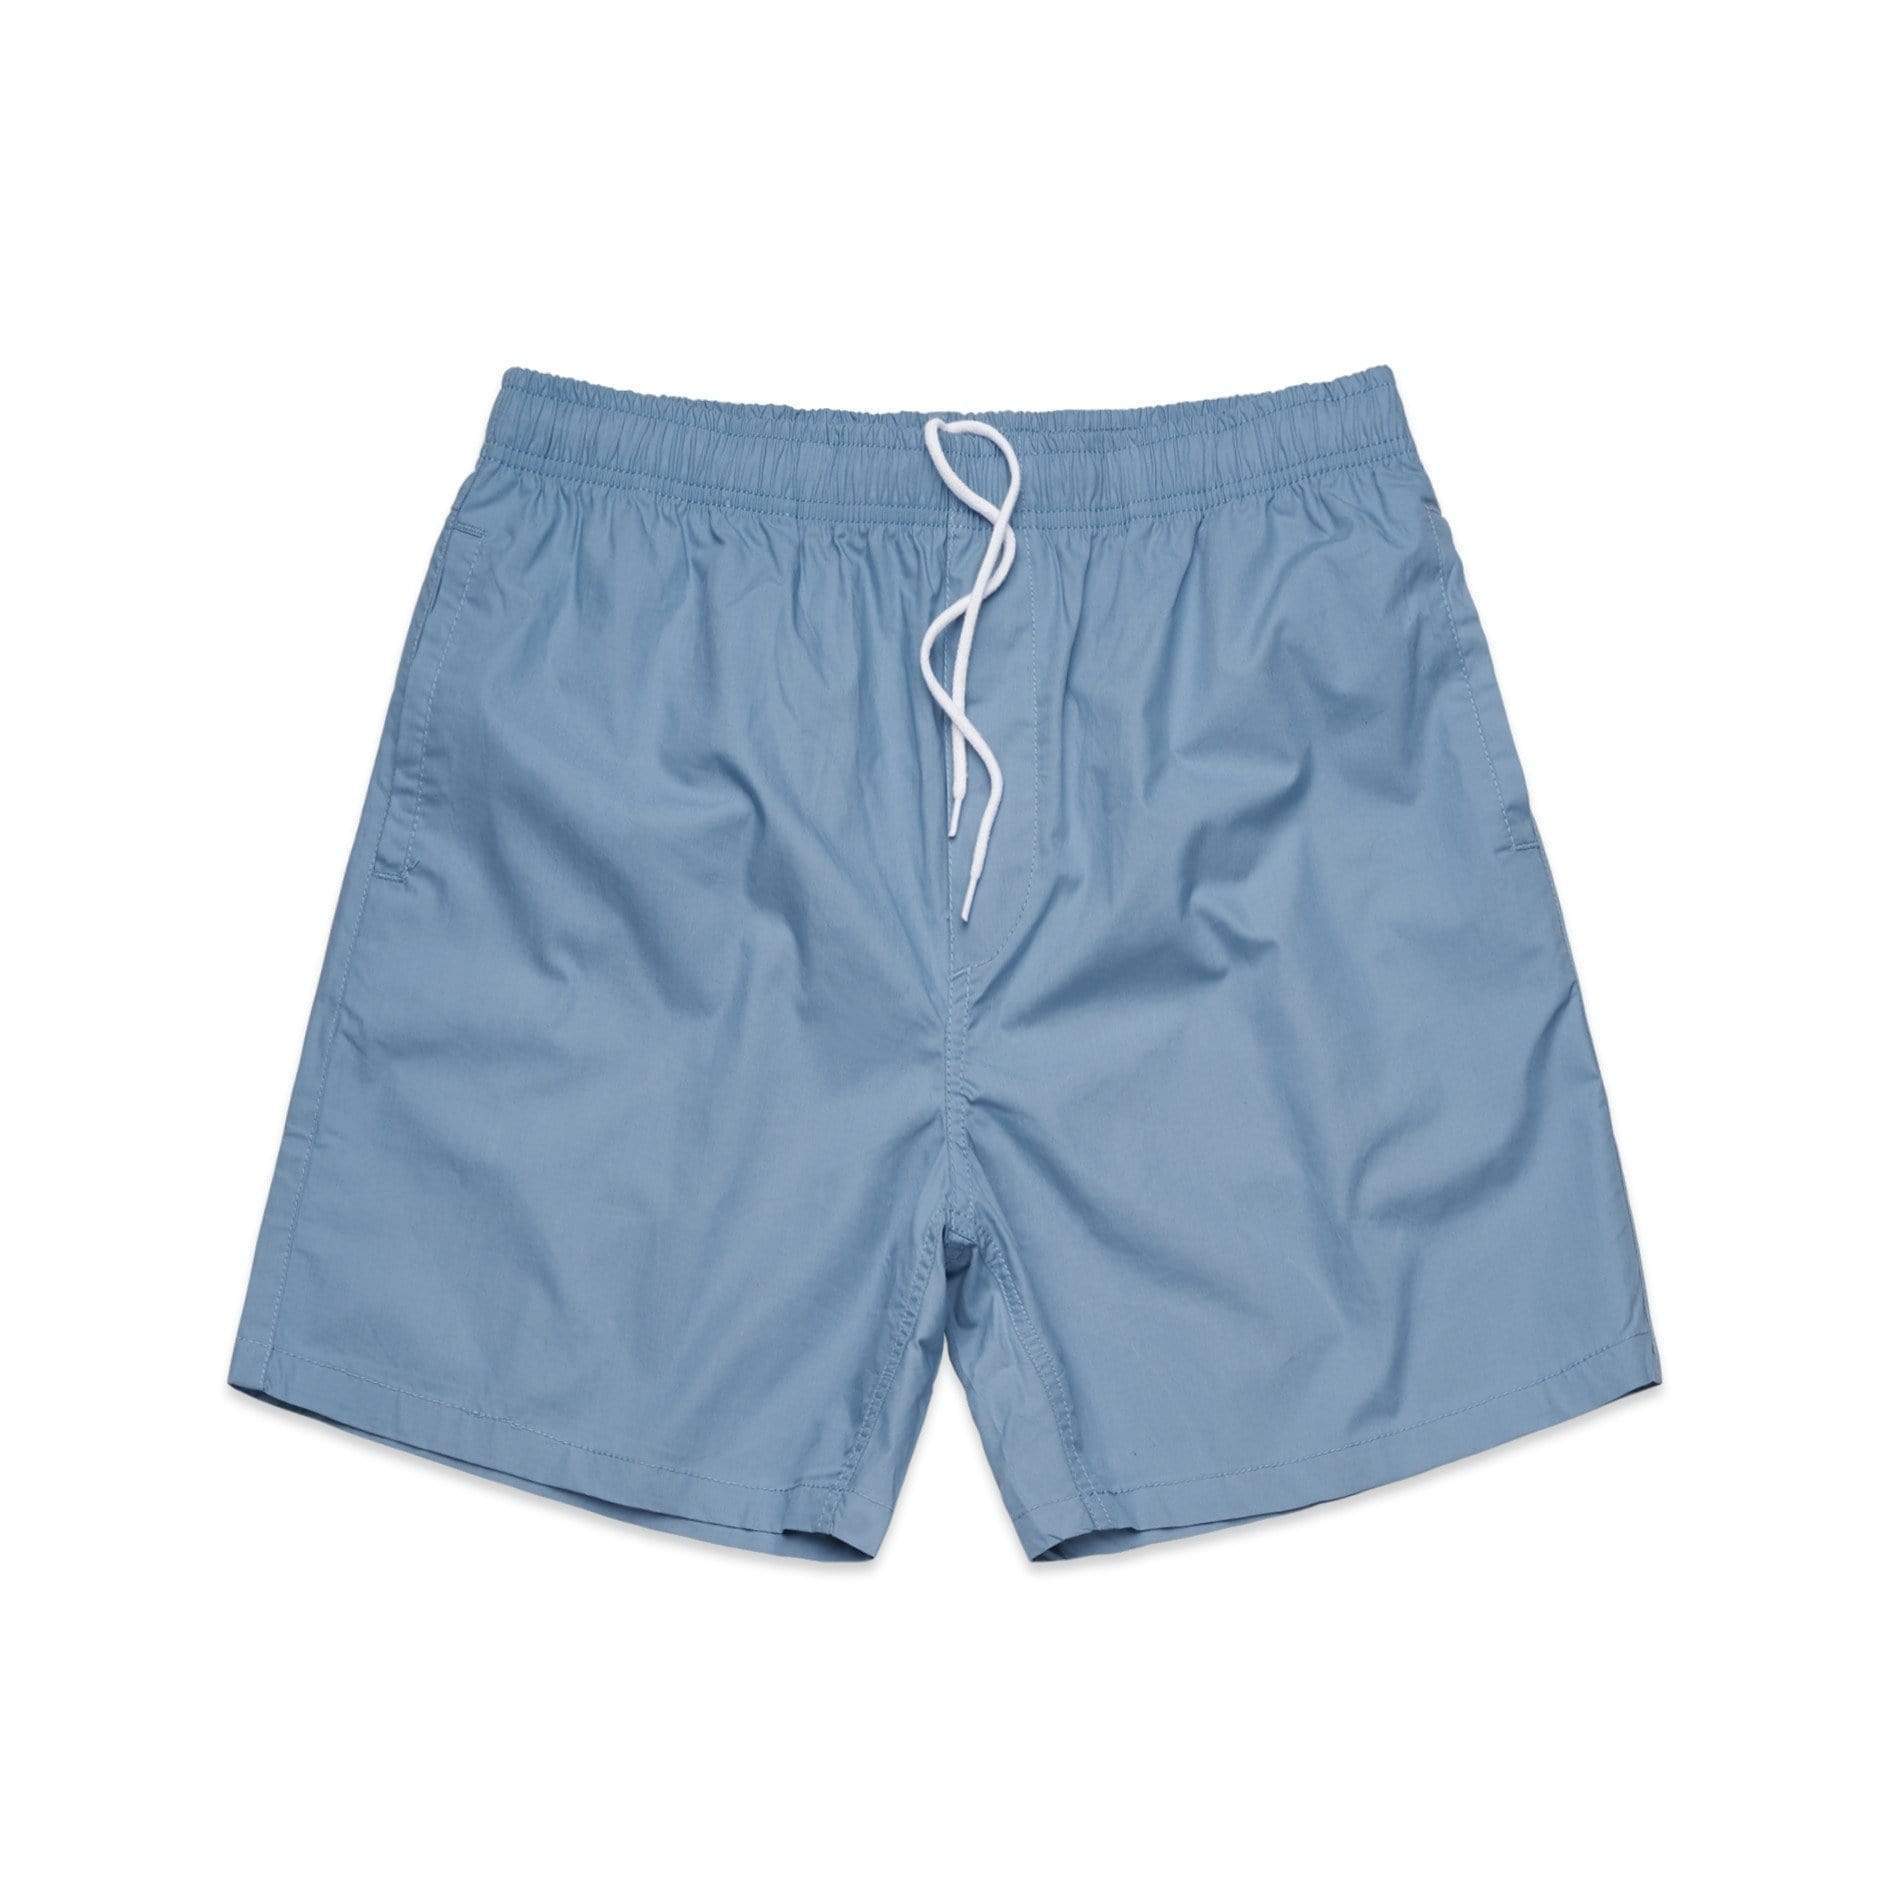 As Colour Active Wear CAROLINA BLUE / 30 As Colour Men's beach shorts 5903